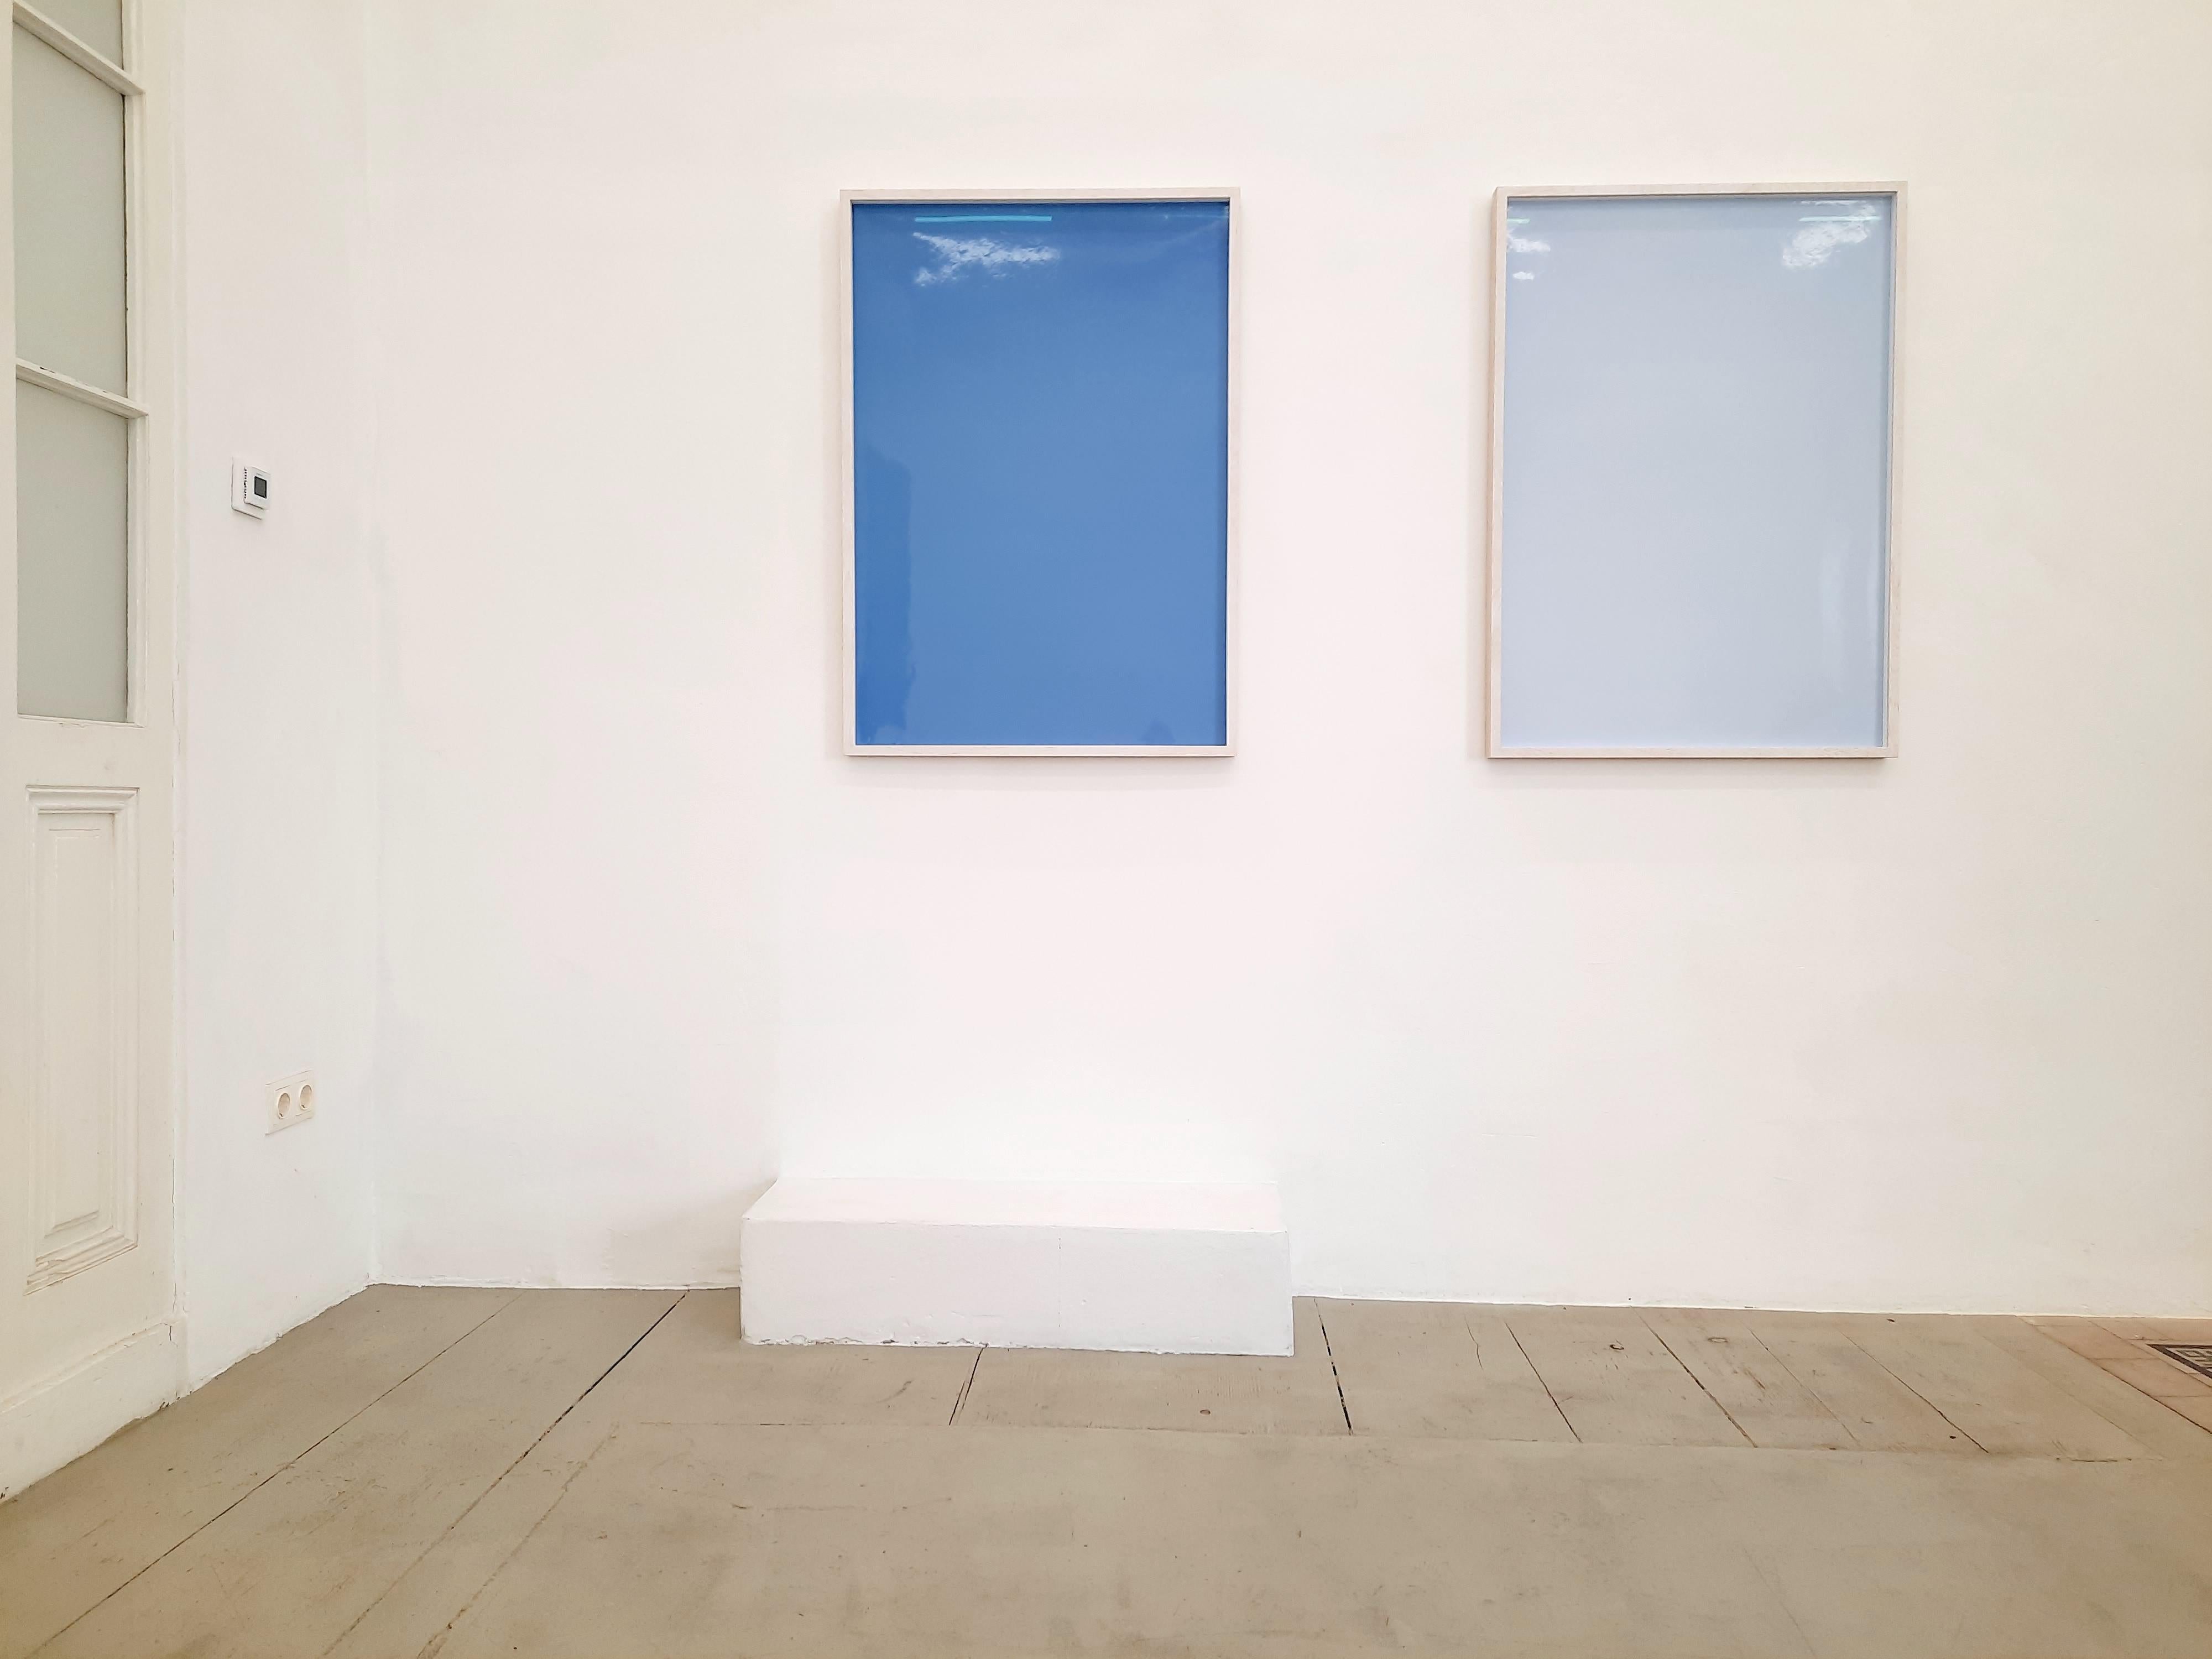 Schatten auf Papier, Nr. 1 – Zeitgenössische abstrakte blaue monochrome Fotografie (Blau), Color Photograph, von Ulrike Königshofer